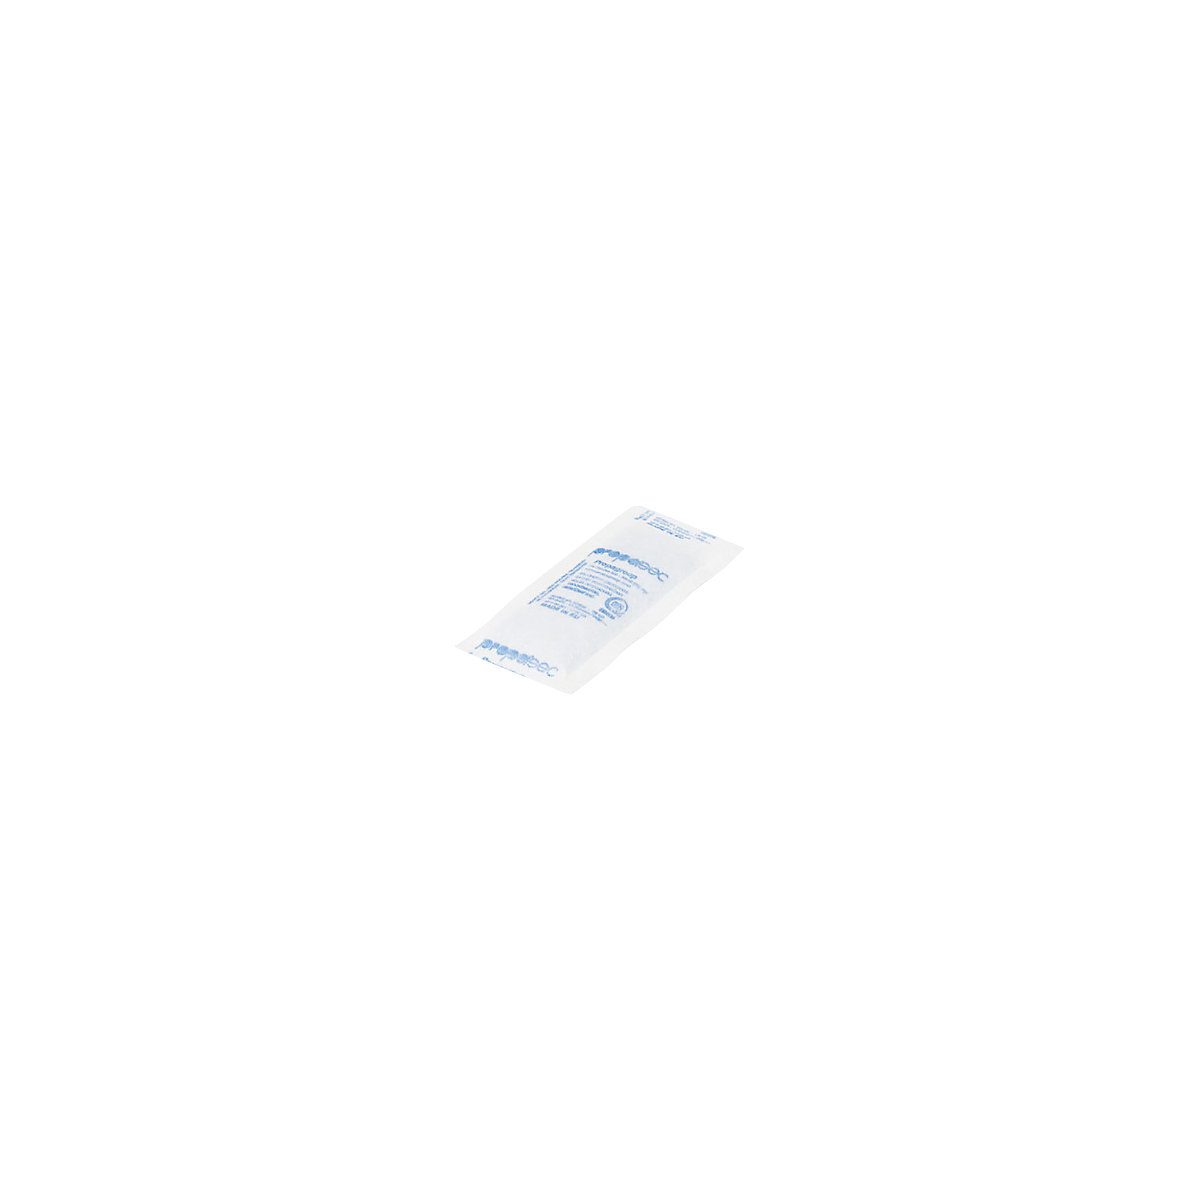 Sacchetti disidratanti, bianco, lungh. x largh. x alt. 85 x 40 x 8 mm, conf. da 1200 pz.-1